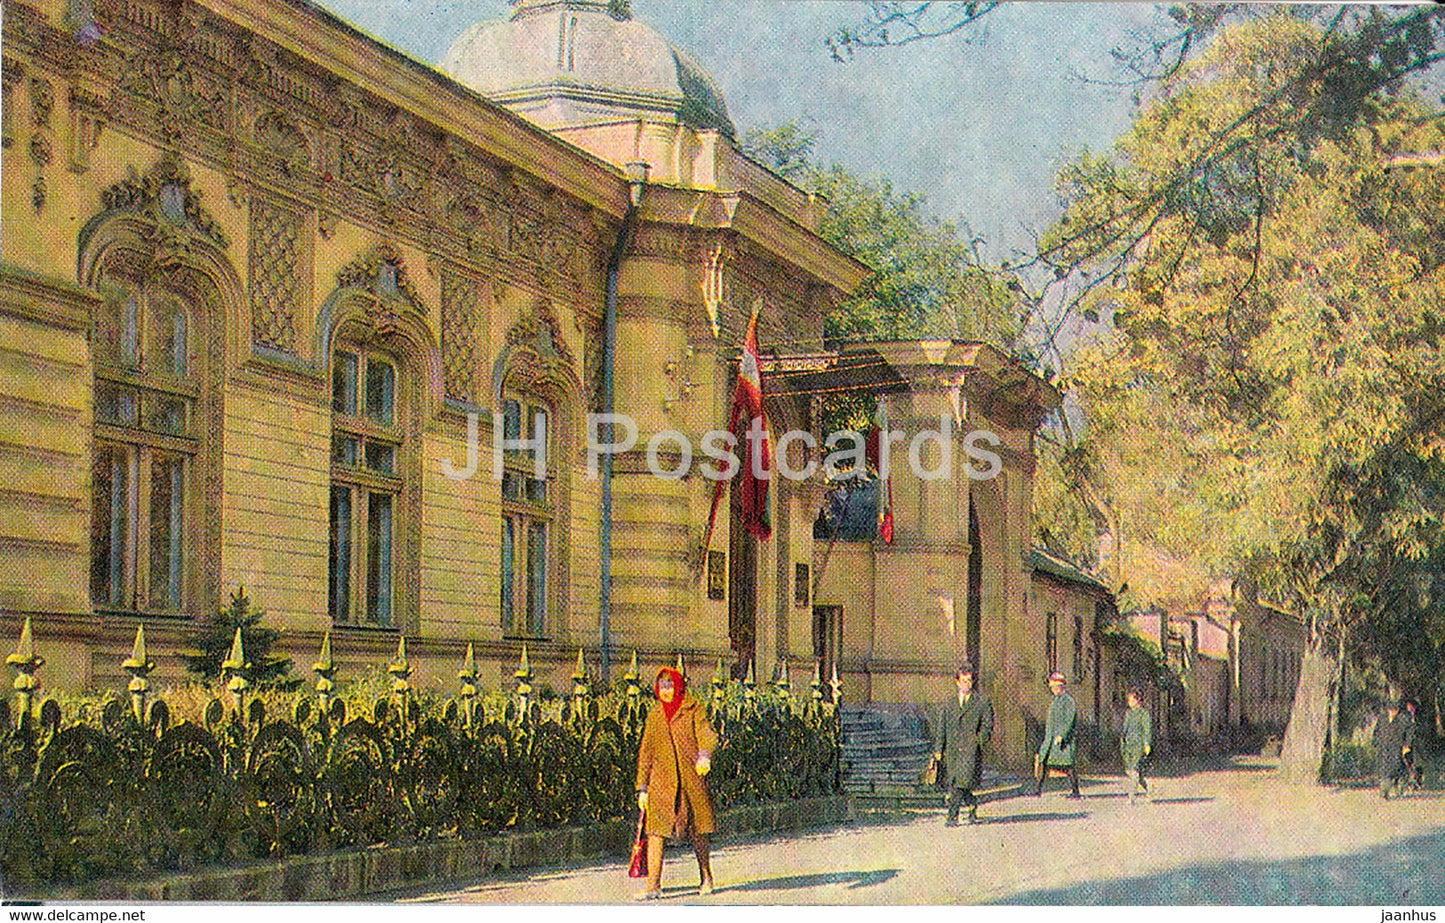 Chisinau - State Art Museum - 1970 - Moldova USSR - unused - JH Postcards